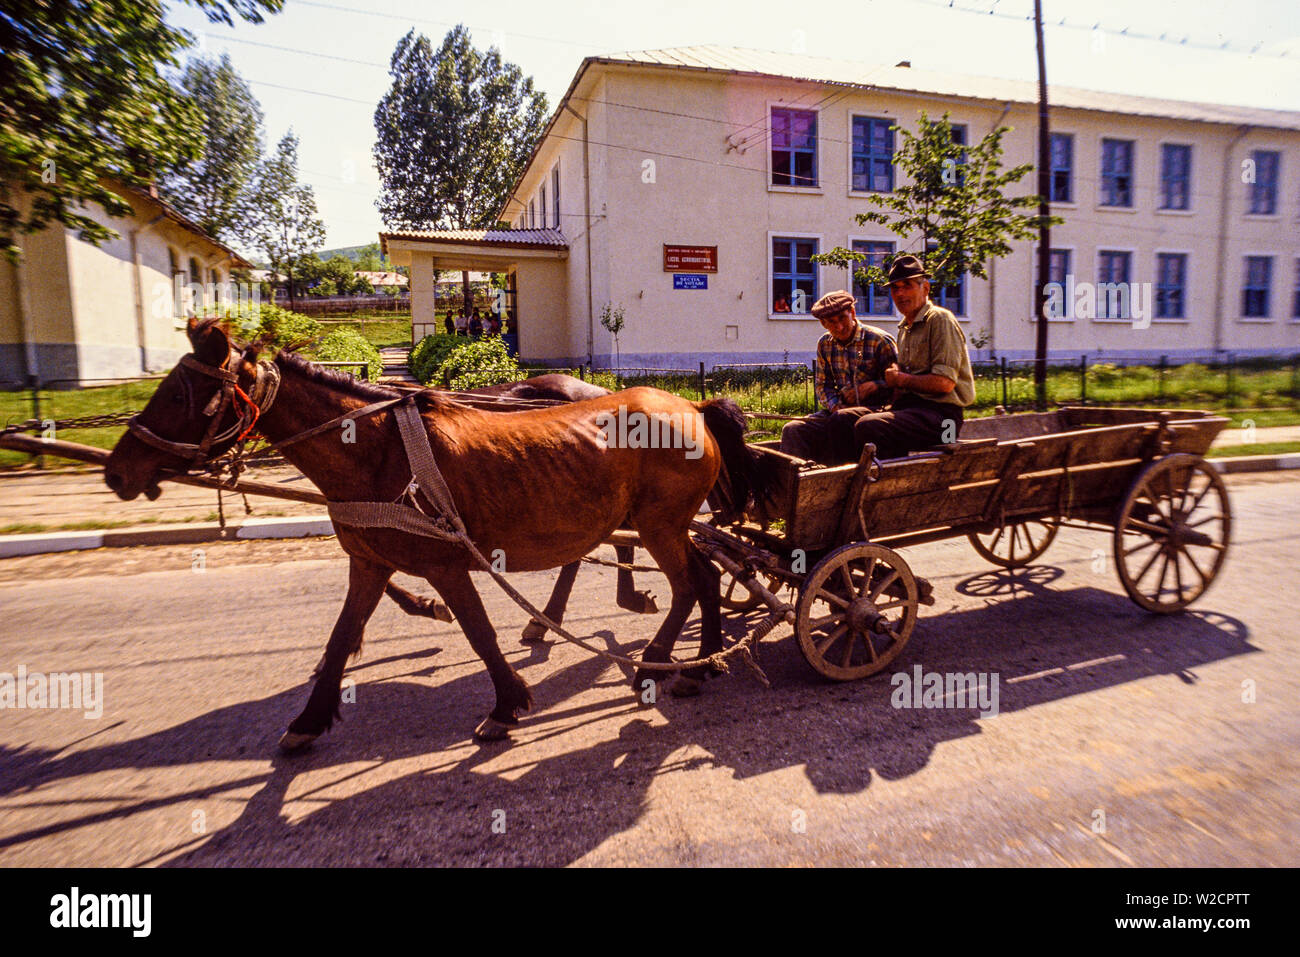 Rumänien. Mai 1990. Ländliche Szene. Zwei Männer fahren mit dem Warenkorb von zwei Pferden gezogen. Foto: © Simon Grosset. Archiv: Bild von einem ursprünglichen Transparenz digitalisiert. Stockfoto